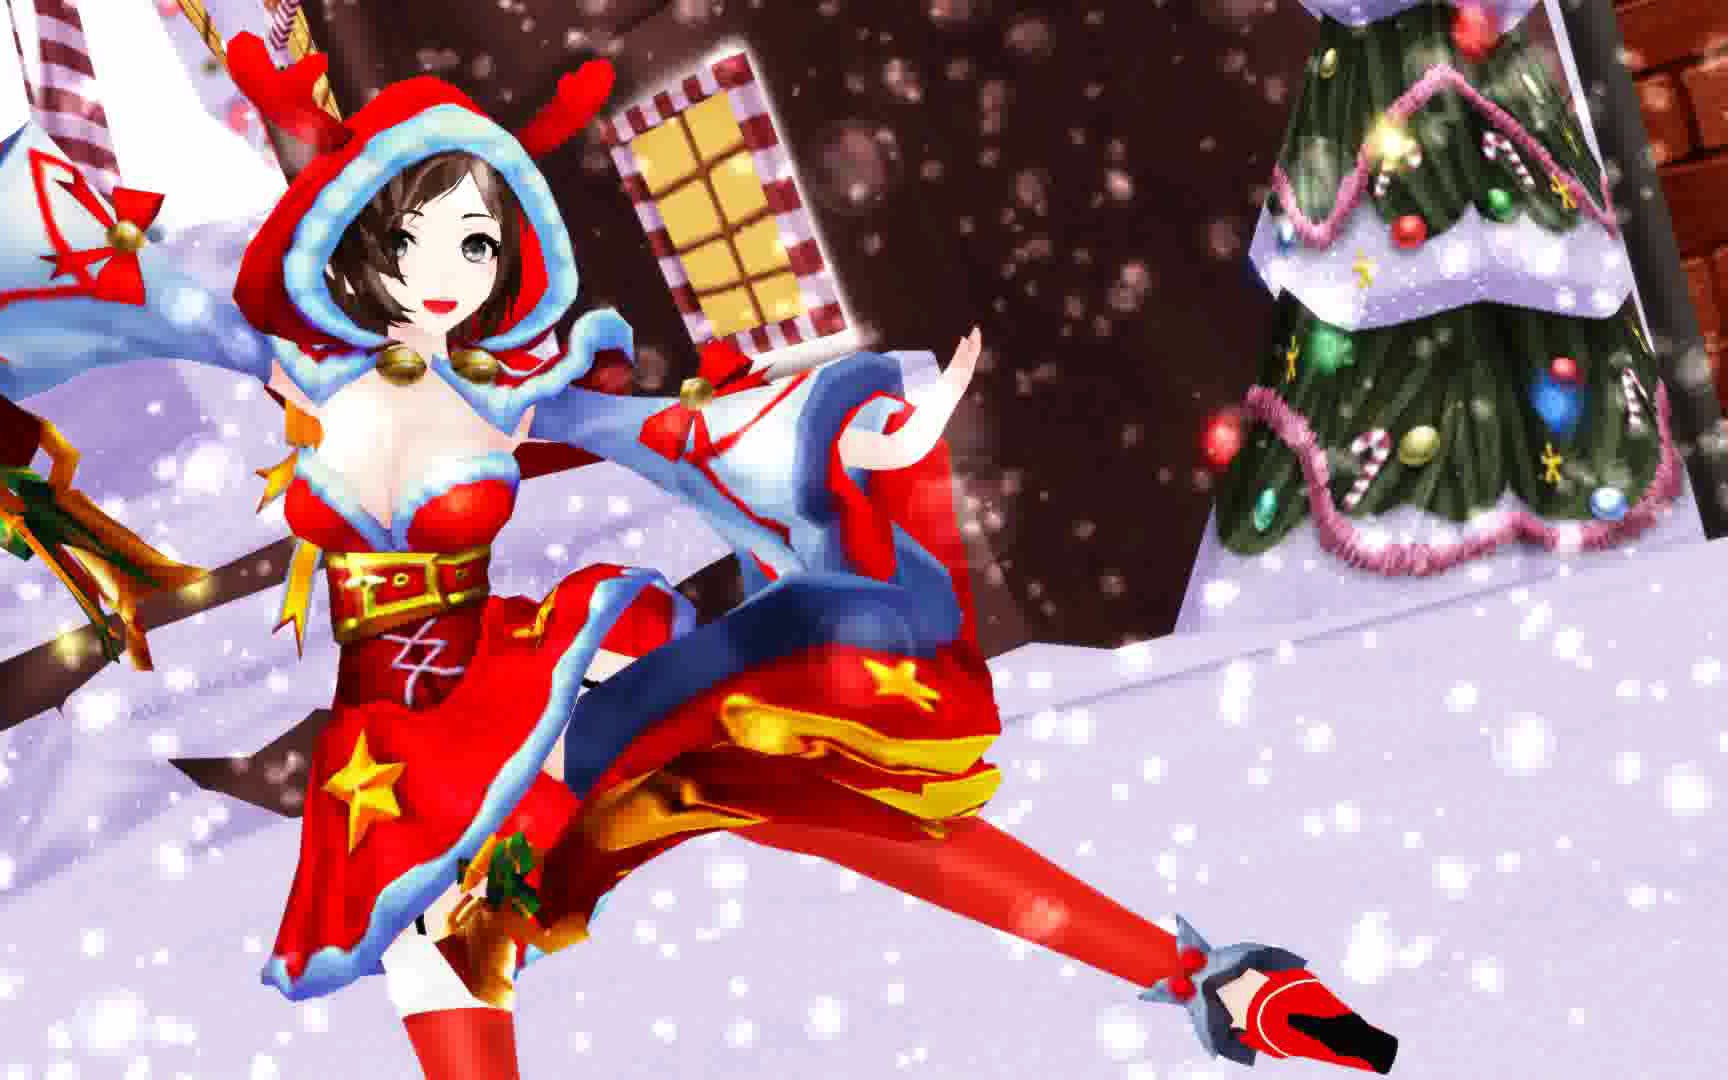 【貂蝉圣诞恋歌】今夜,我就是你的圣诞礼物.喜欢!雪!真实的魔法!^o